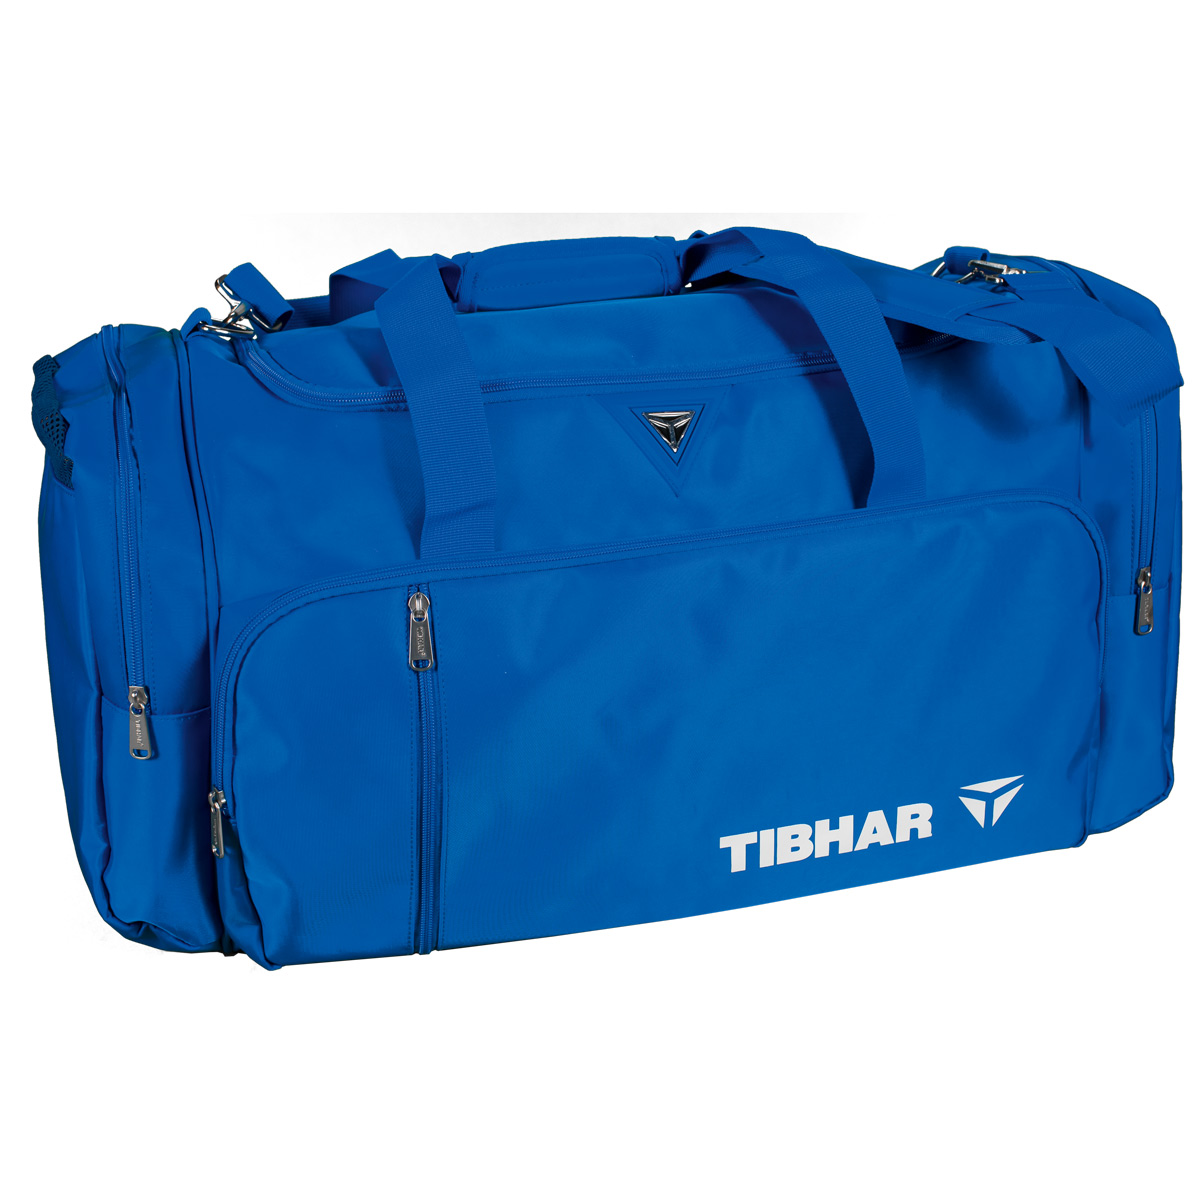 TIBHAR Sportbag Macao blue